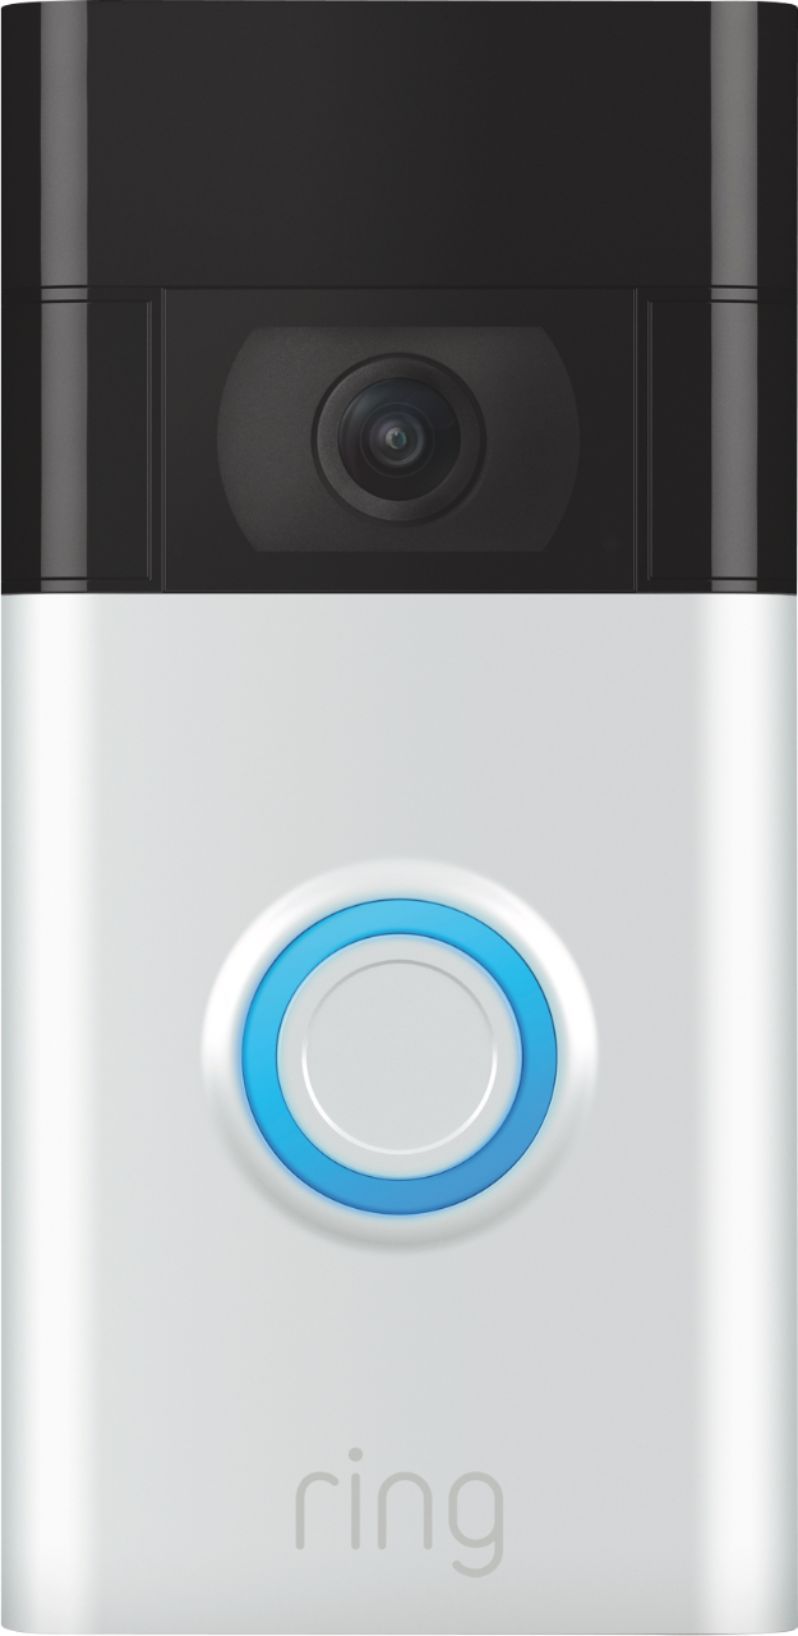 Ring Video Doorbell Satin Nickel 8VRASZ-SEN0 - Best Buy | Best Buy U.S.